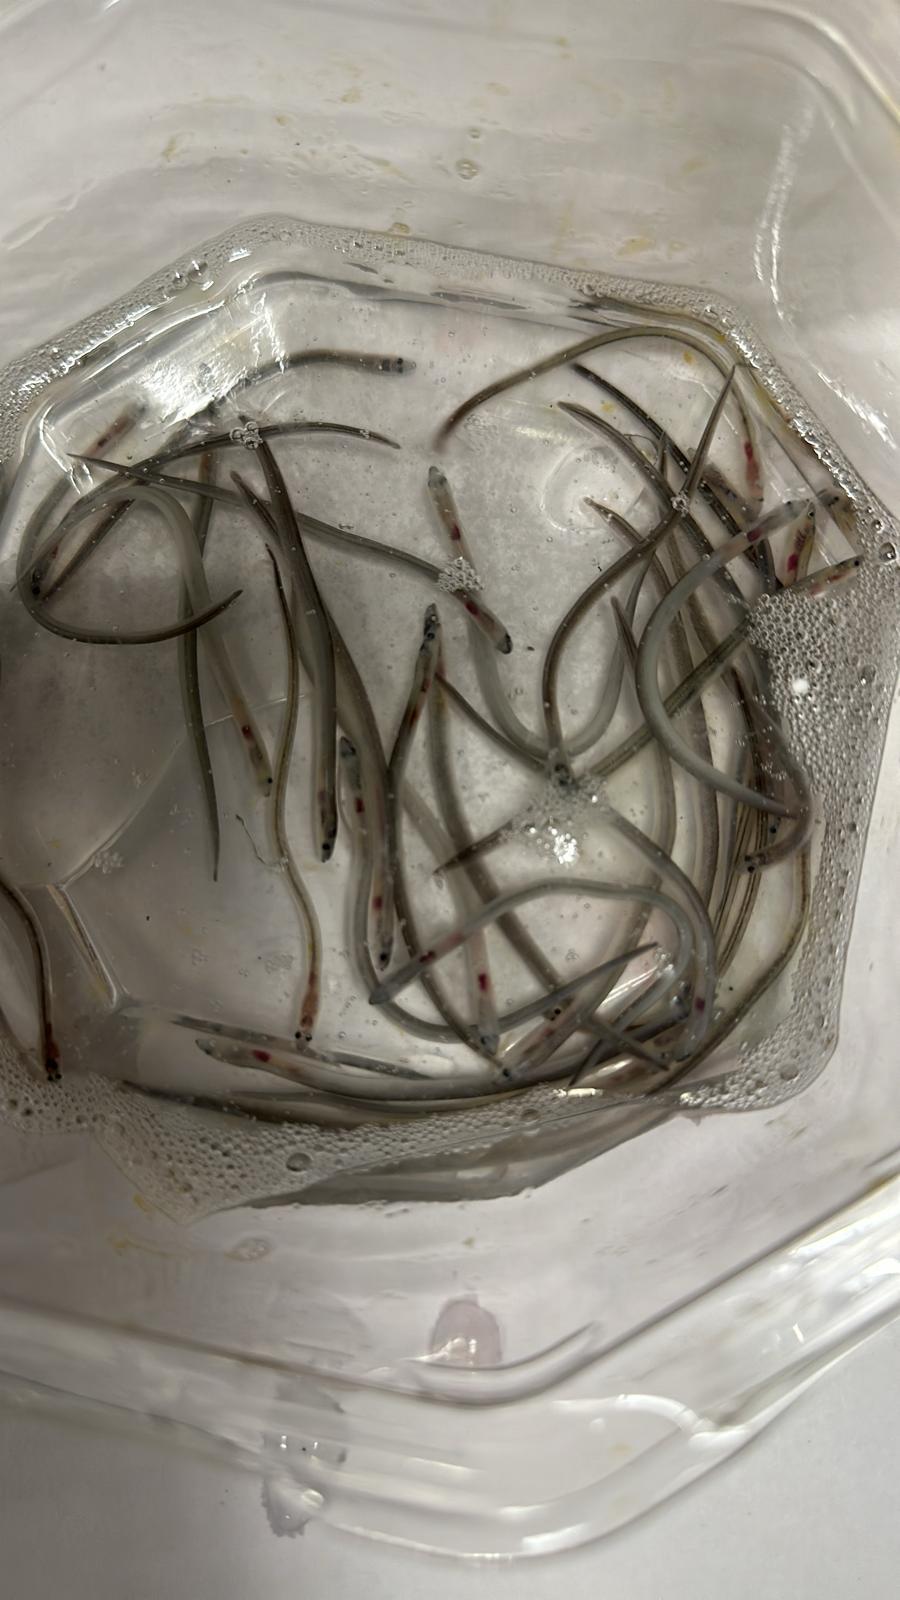 渔农自然护理署昨日（三月十四日）在香港国际机场检取53公斤鳗鱼苗，当中包括受管制的品种。图示部分检取的欧洲鳗鲡鱼苗。